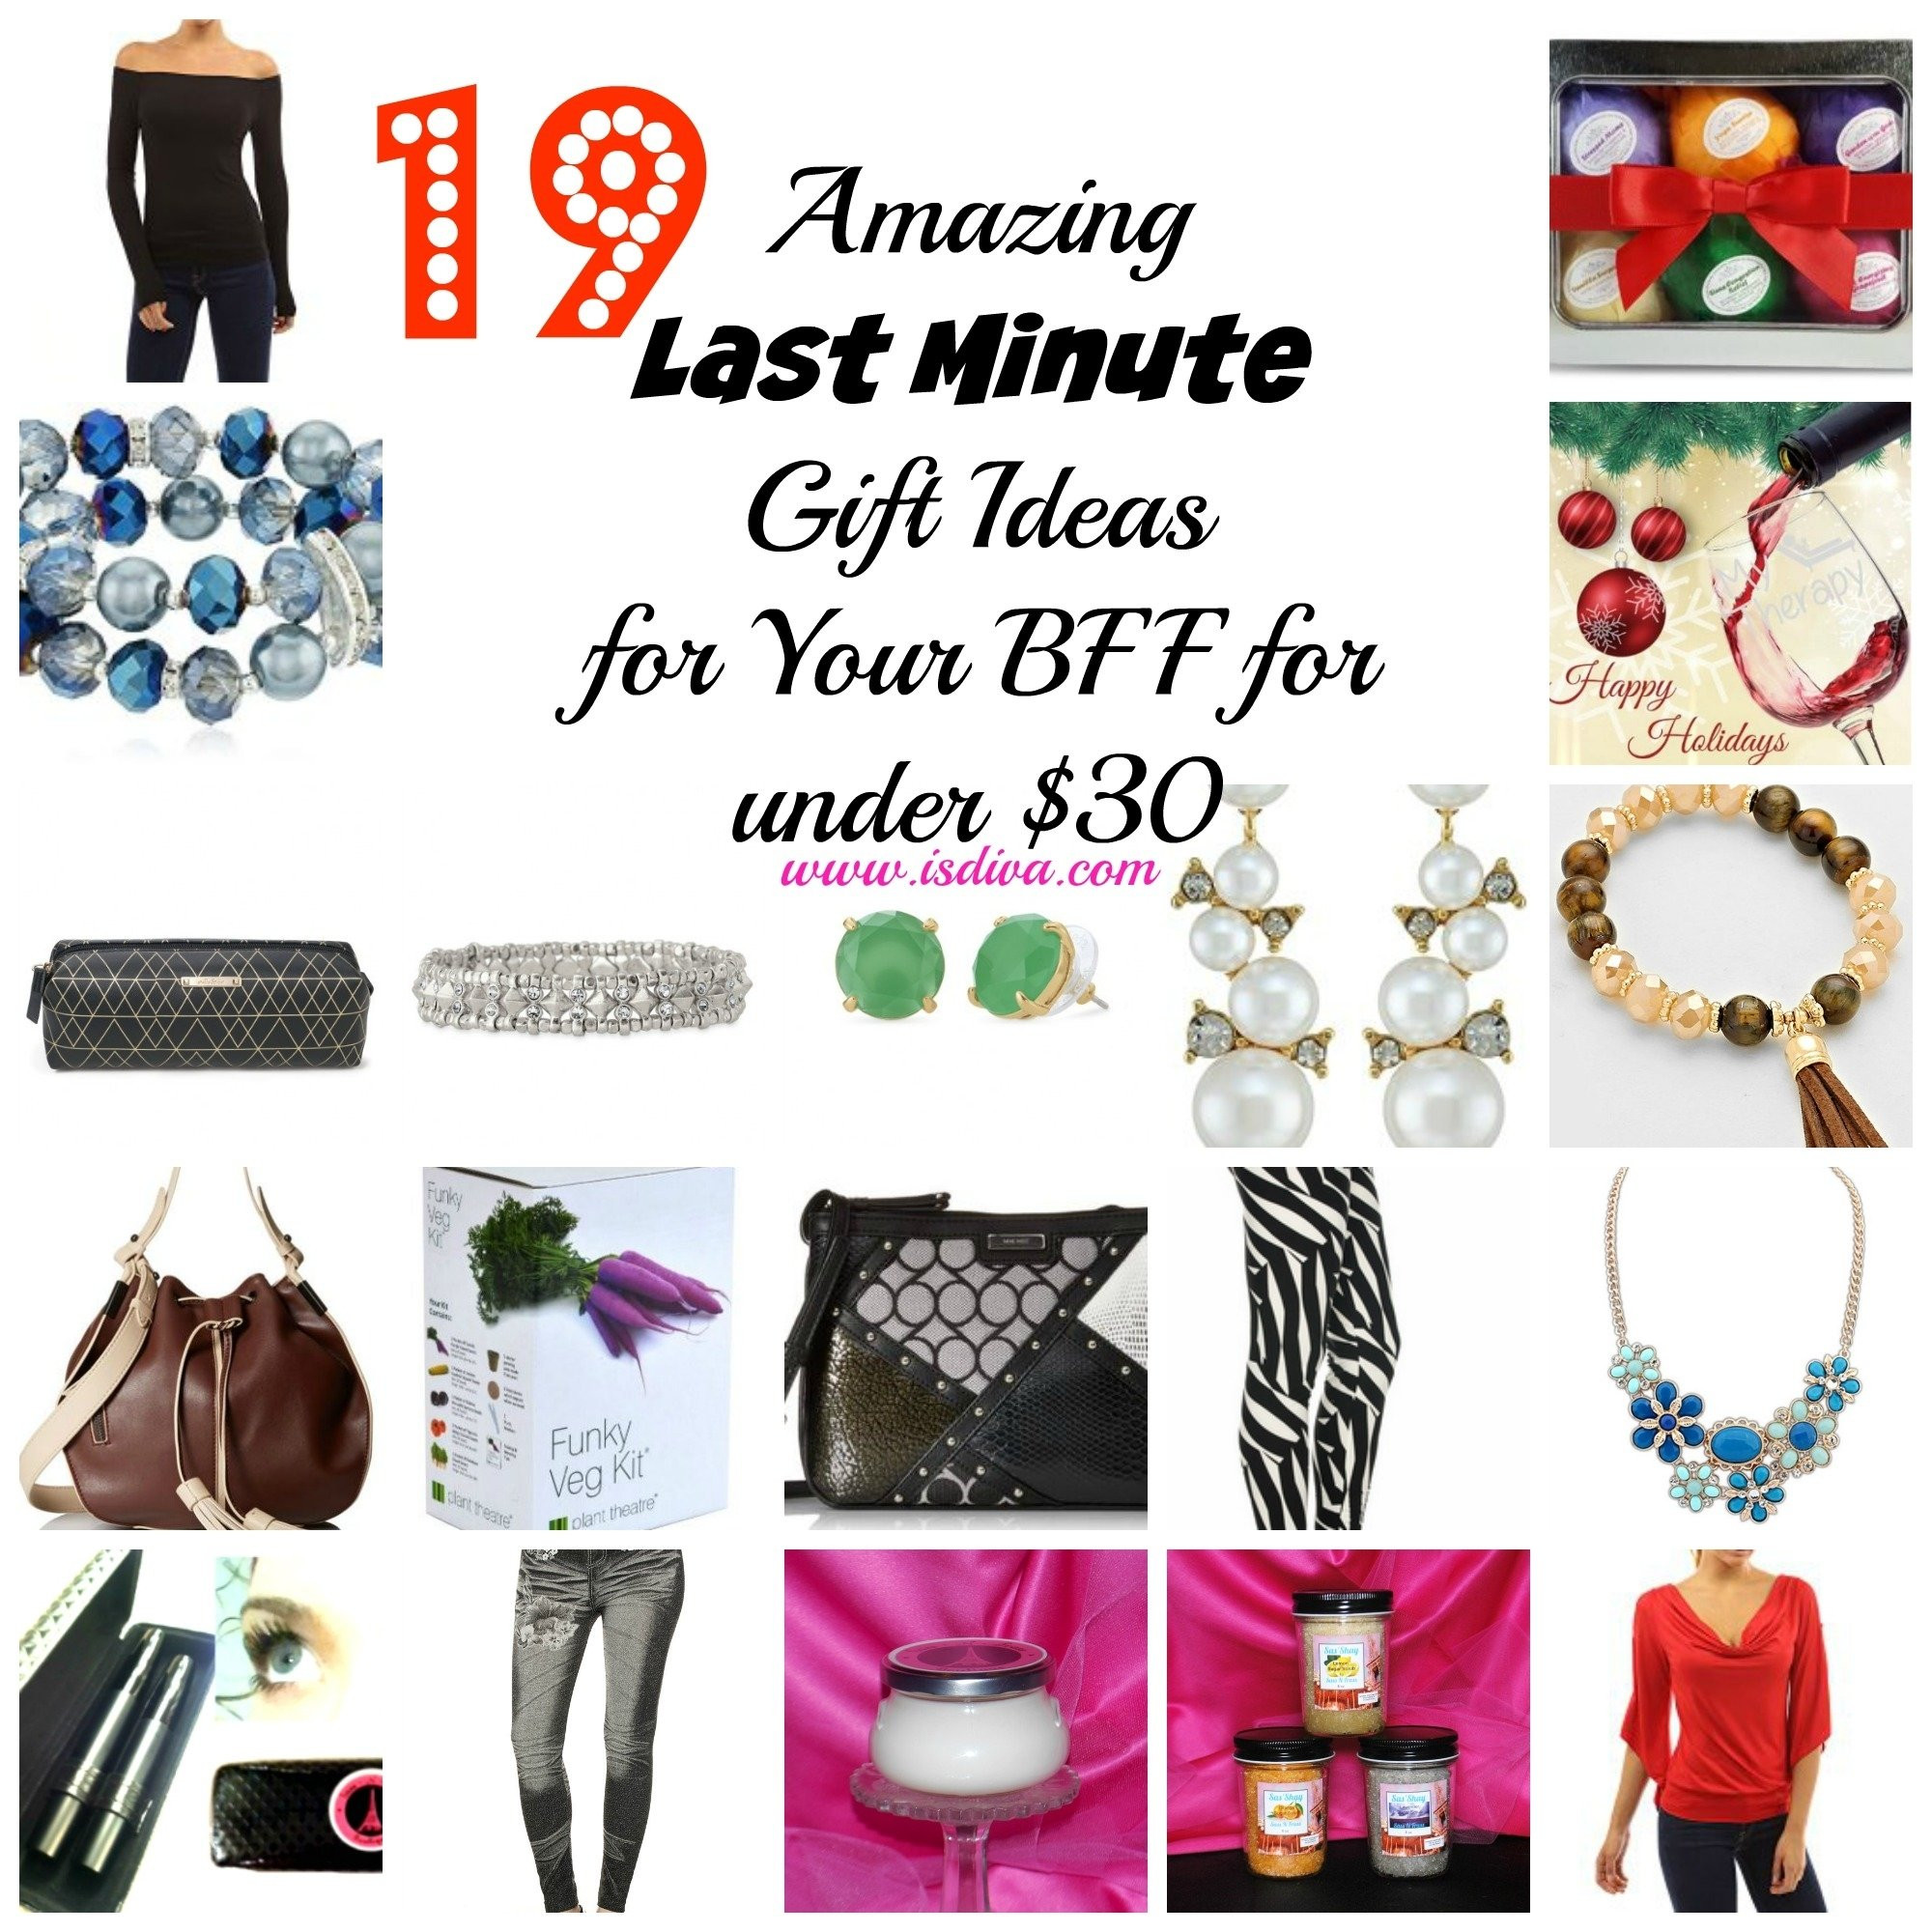 Last Minute Gift Ideas For Girlfriend
 10 Fabulous Last Minute Gift Ideas For Wife 2020